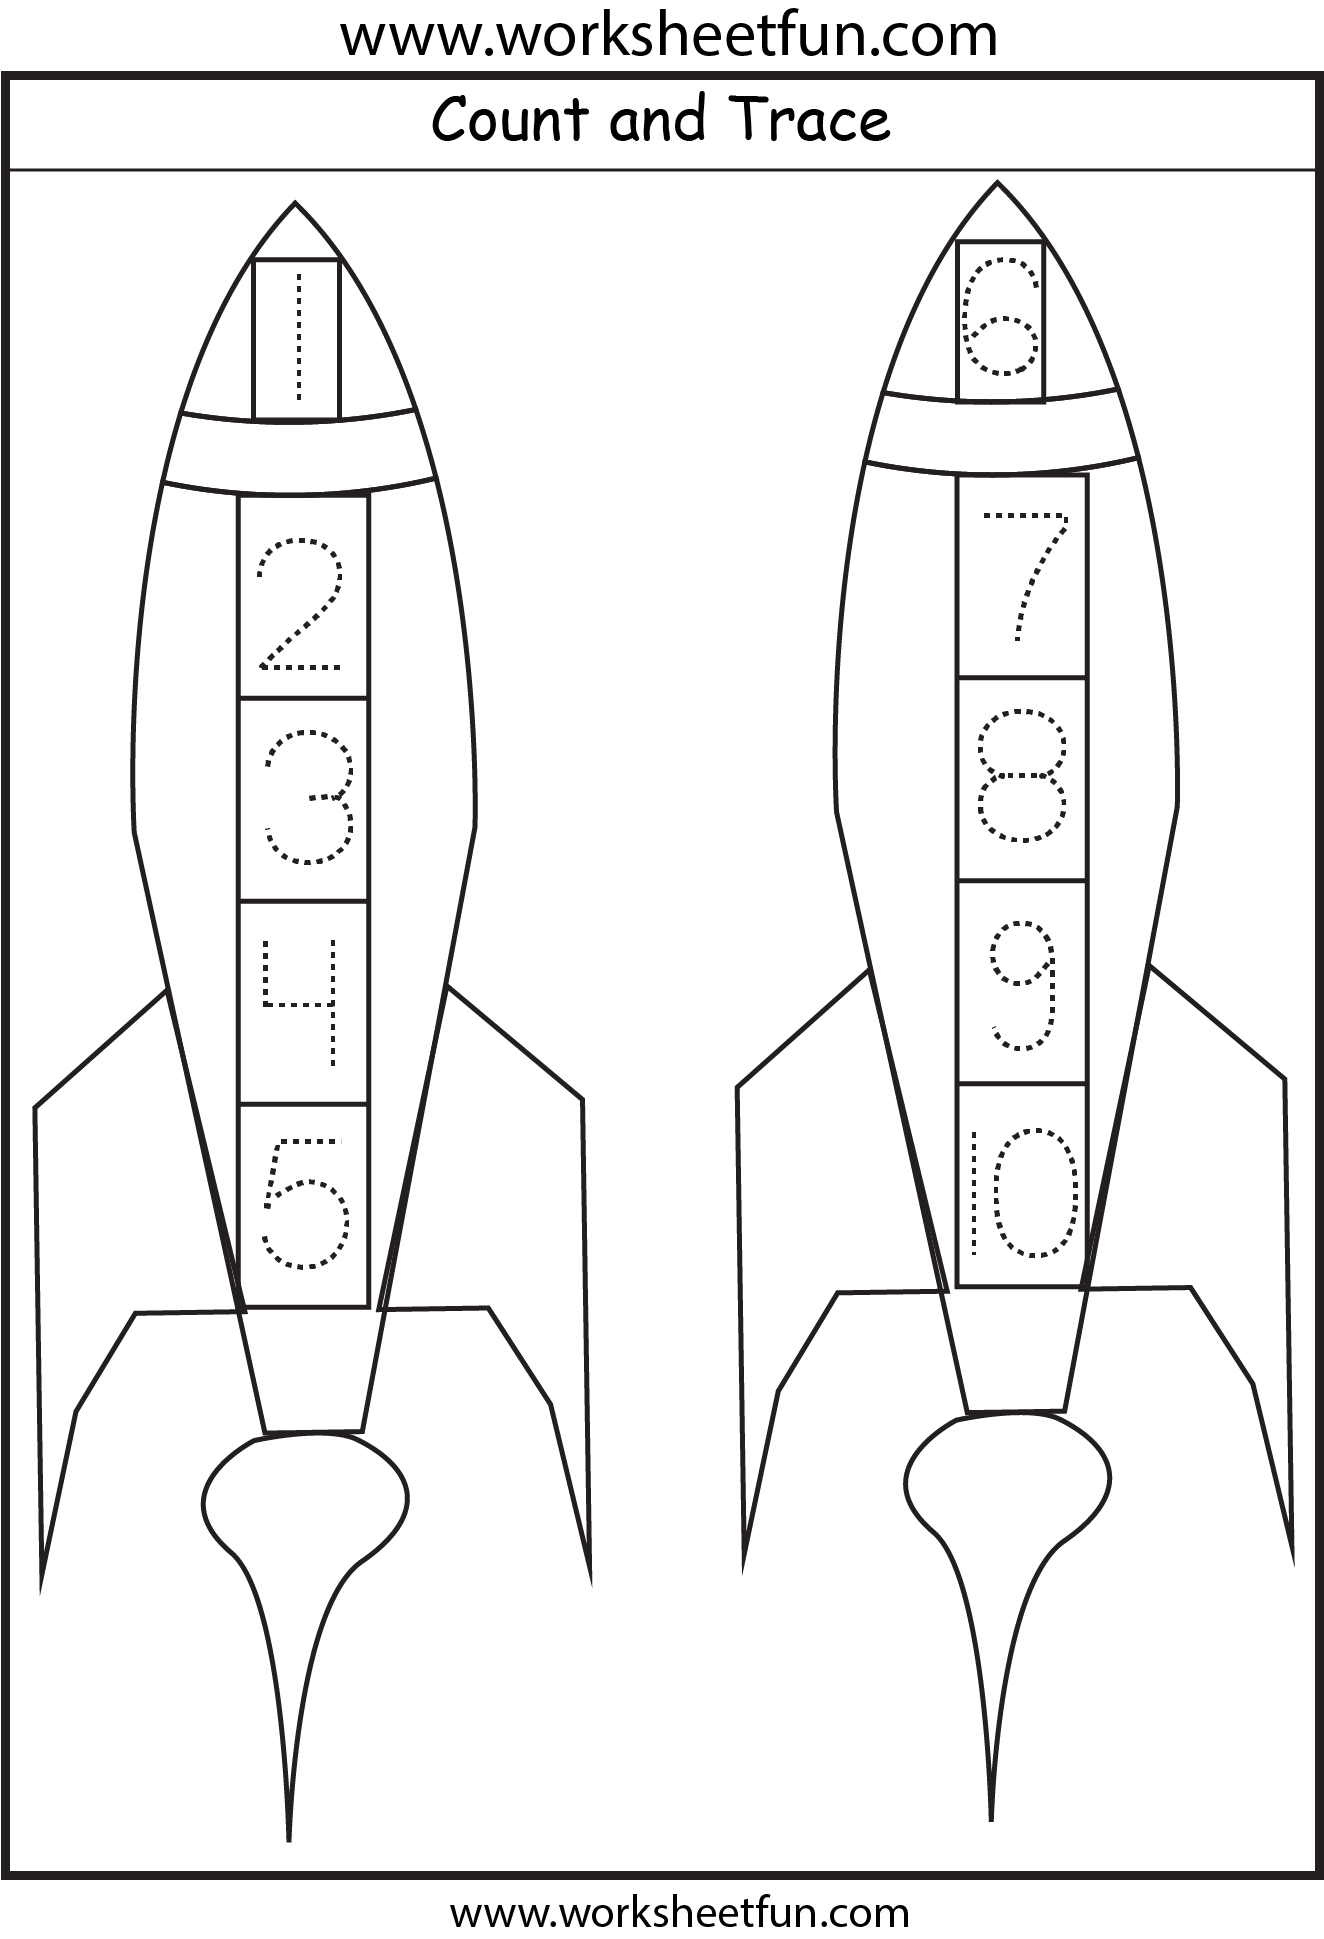 number-tracing-rocket-1-worksheet-free-printable-worksheets